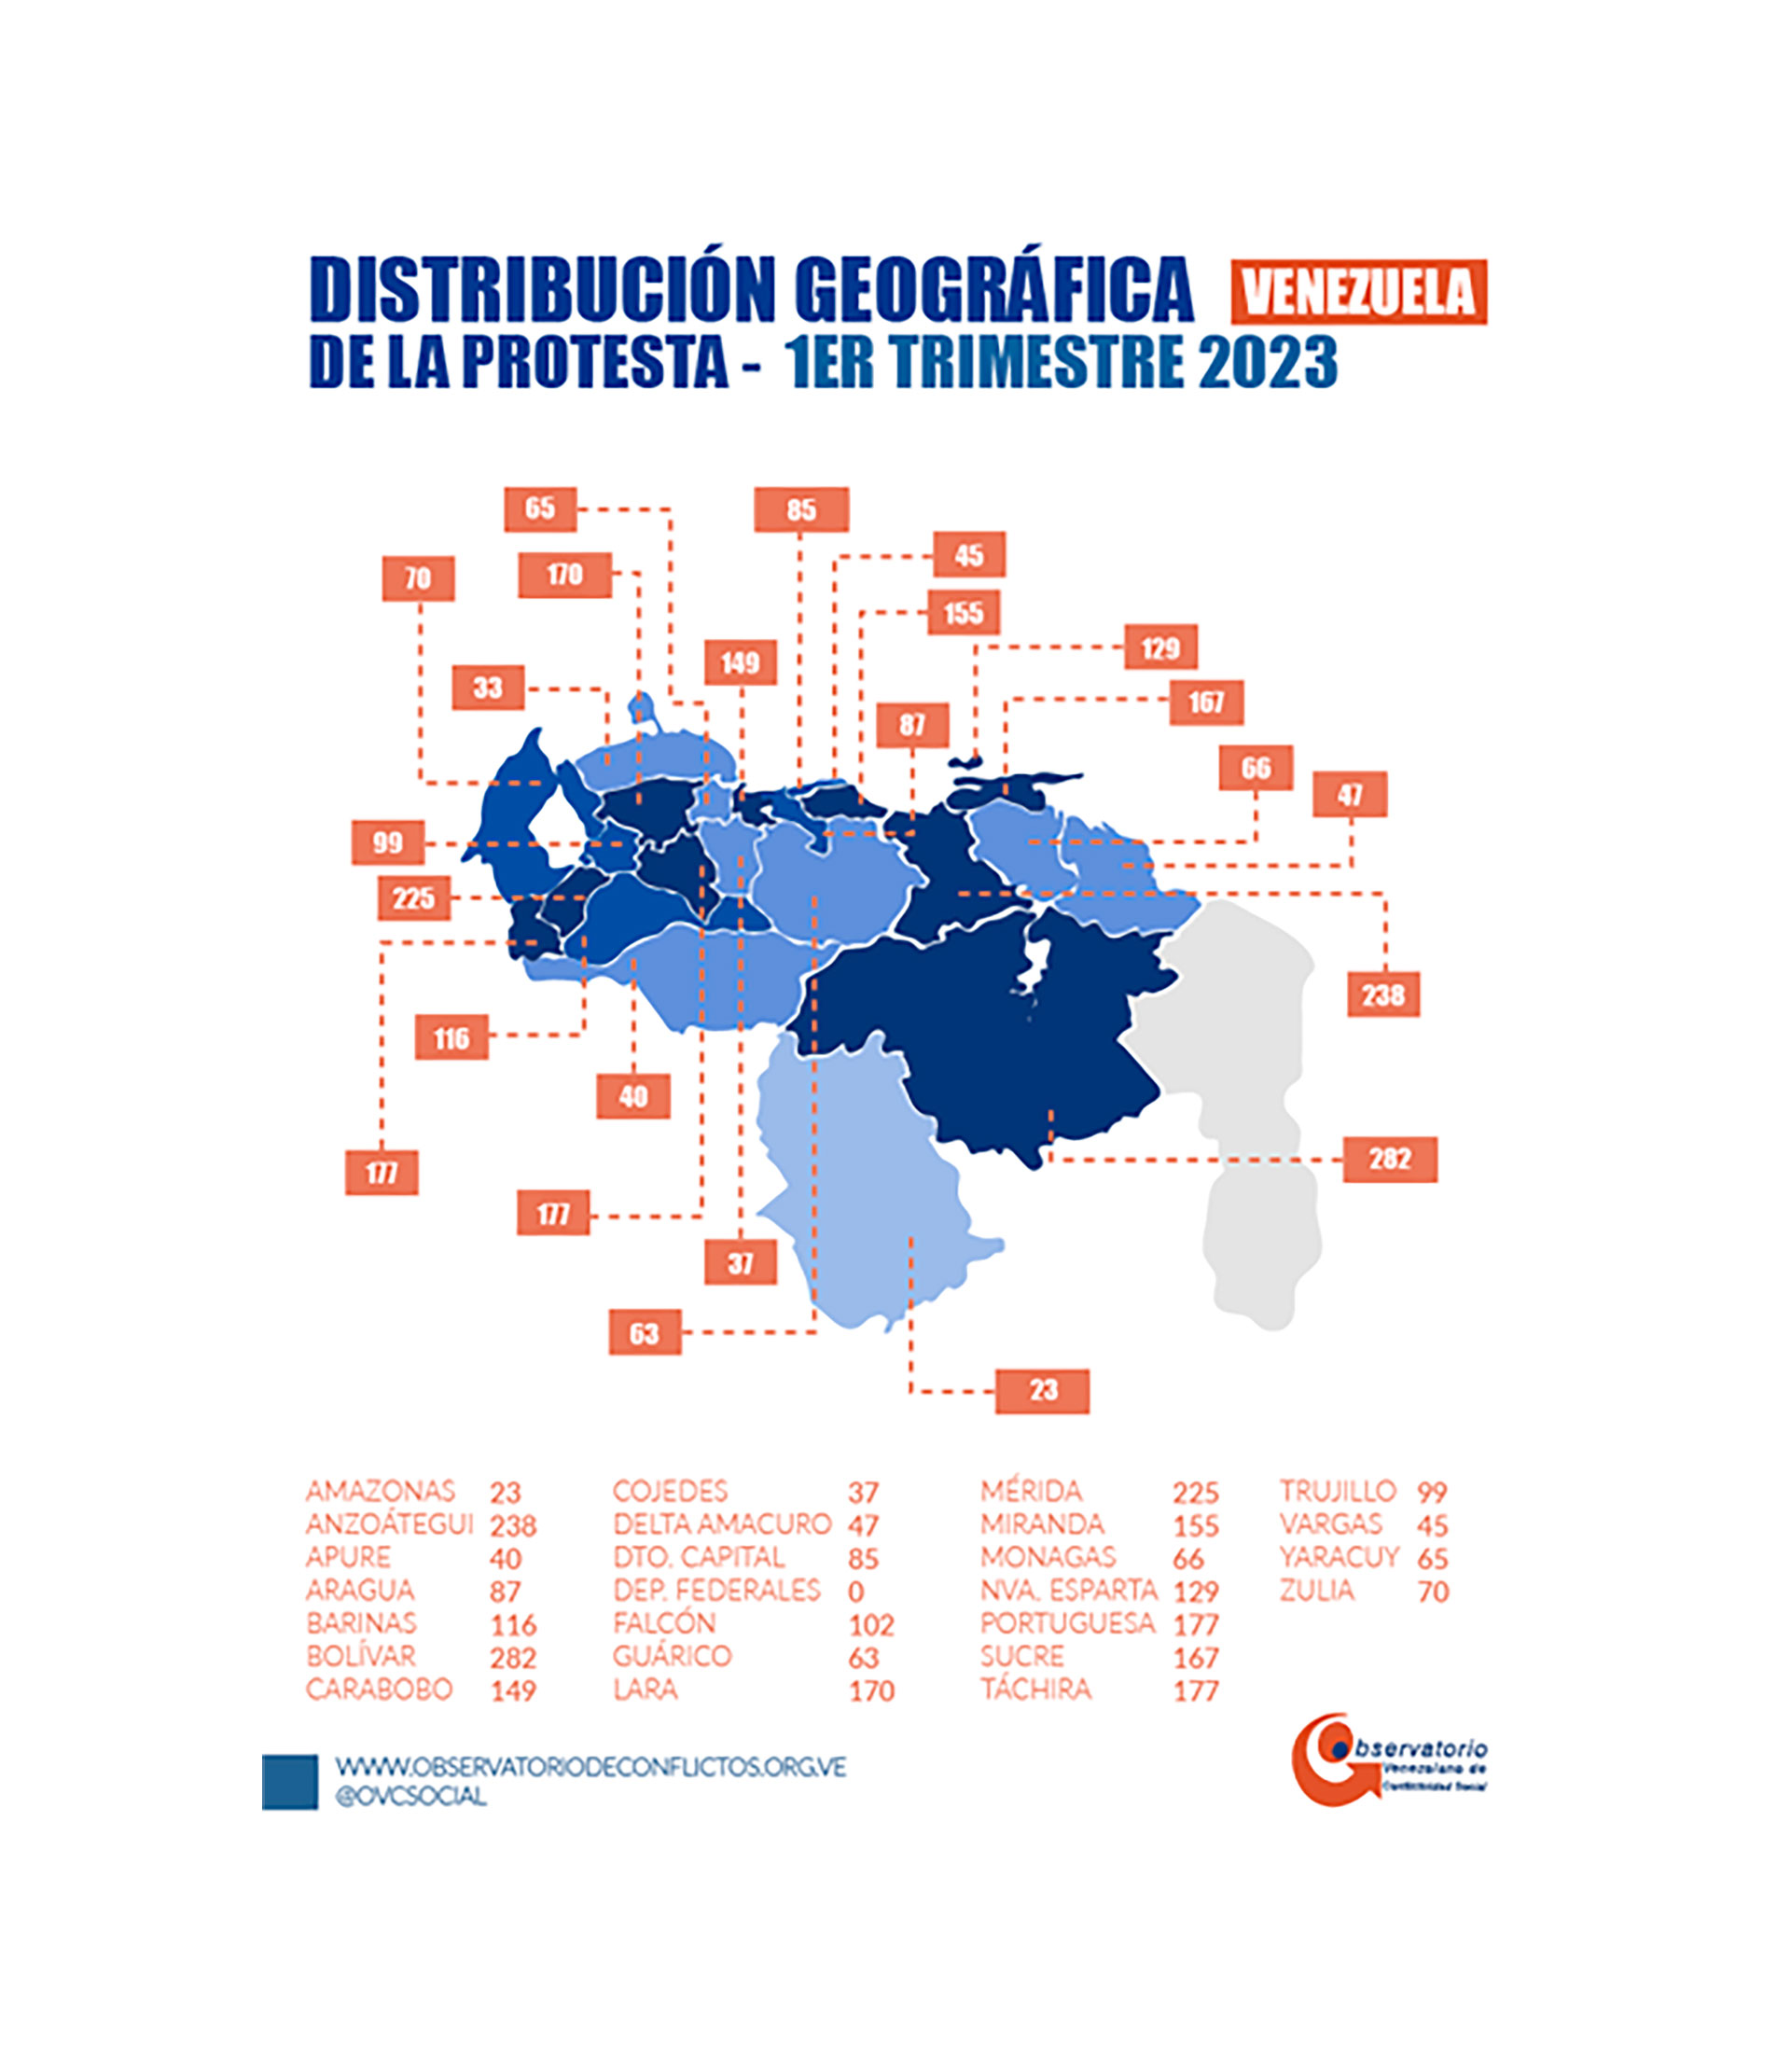 Los estados que encabezan el índice de protestas son Bolívar, con 282 manifestaciones; Anzoátegui, con 238; y Mérida, con 225 (Crédito: Observatorio Venezolano de Conflictividad Social)